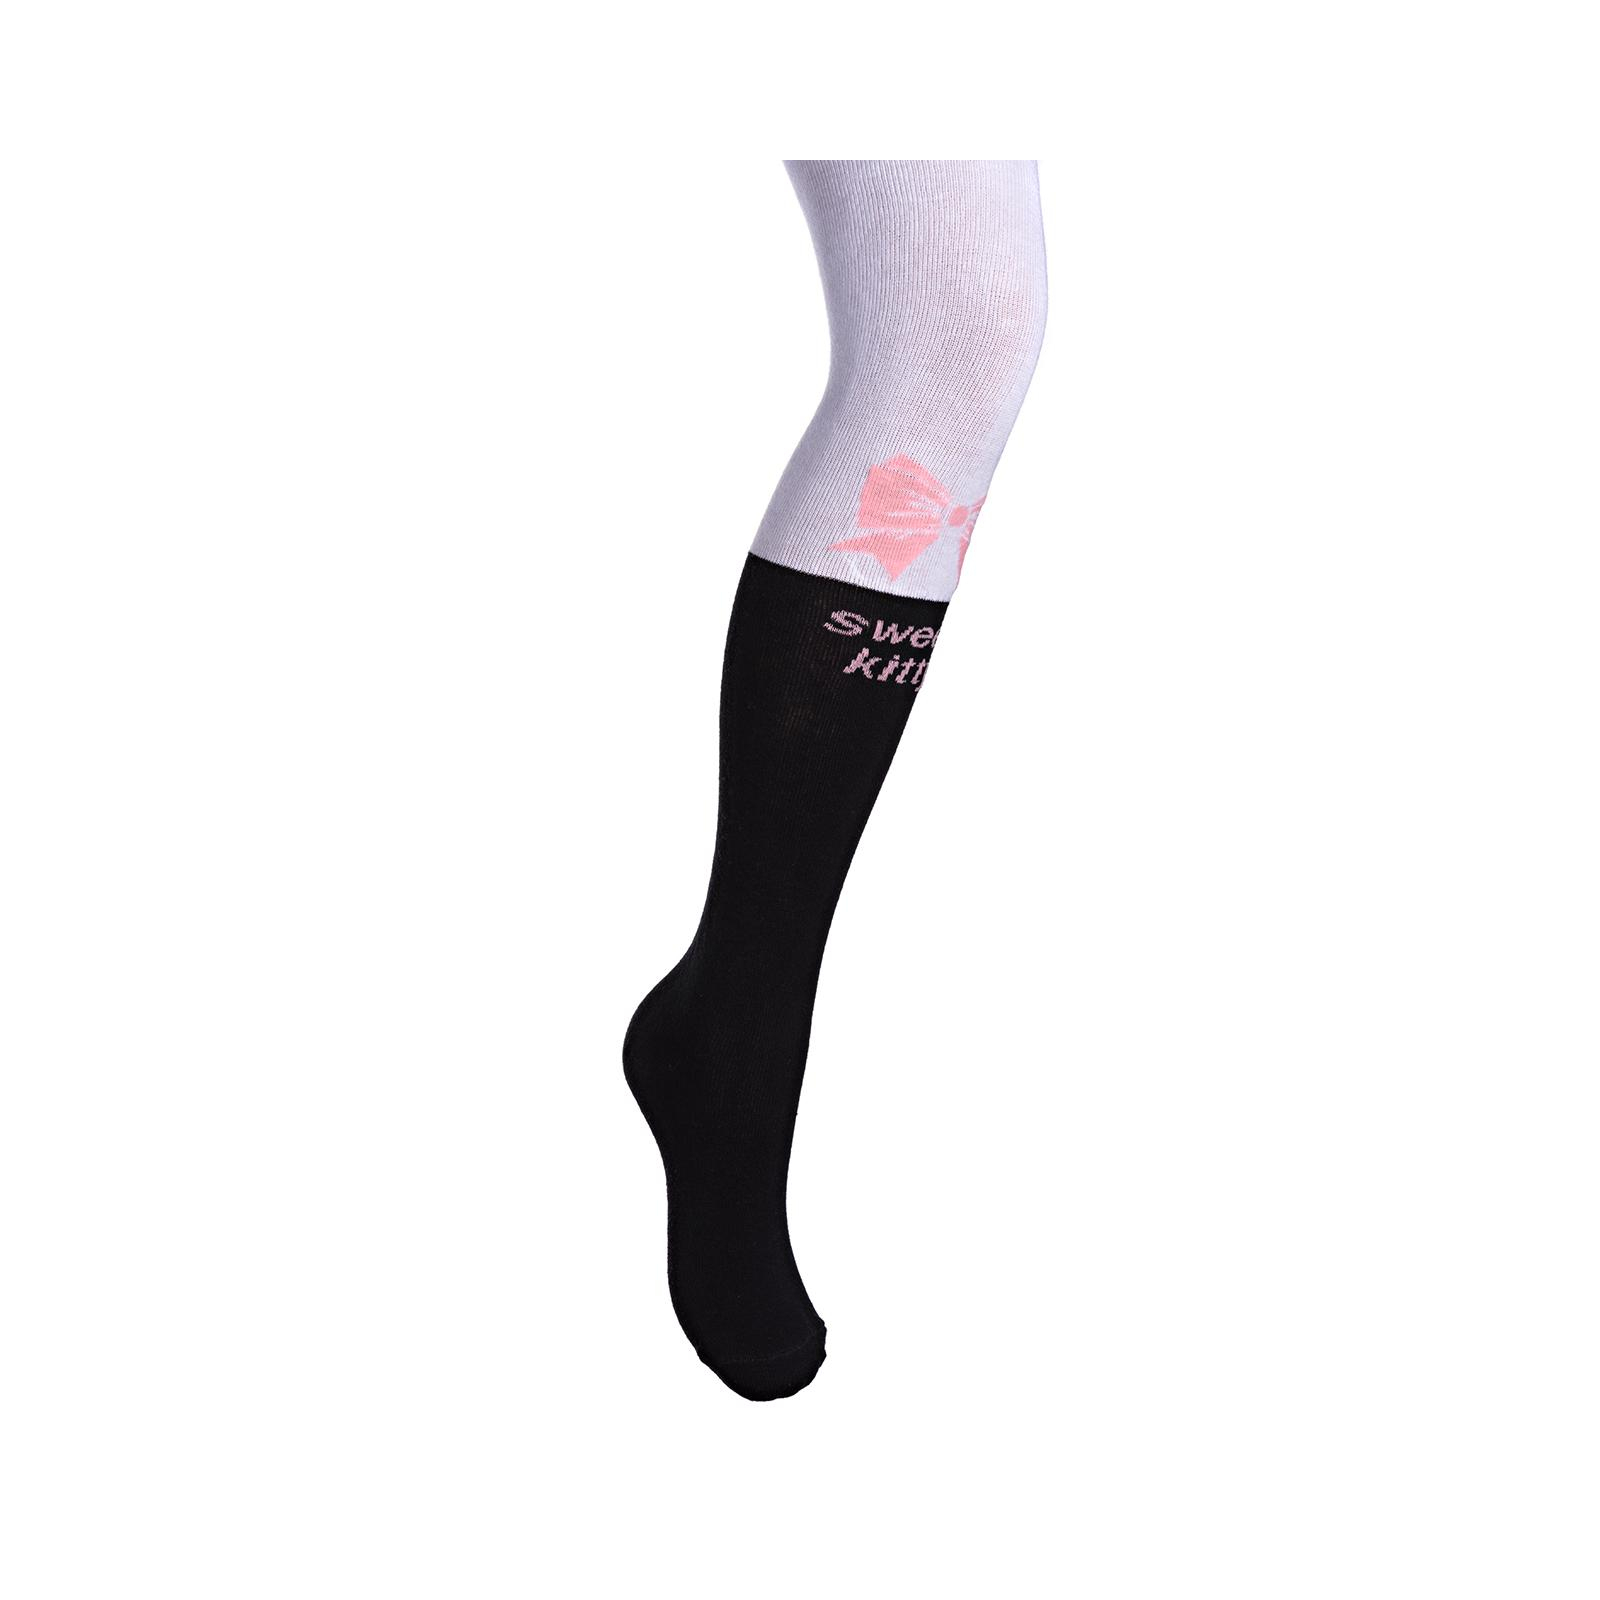 Колготки UCS Socks с котиками (M0C0301-1196-98G-pink)